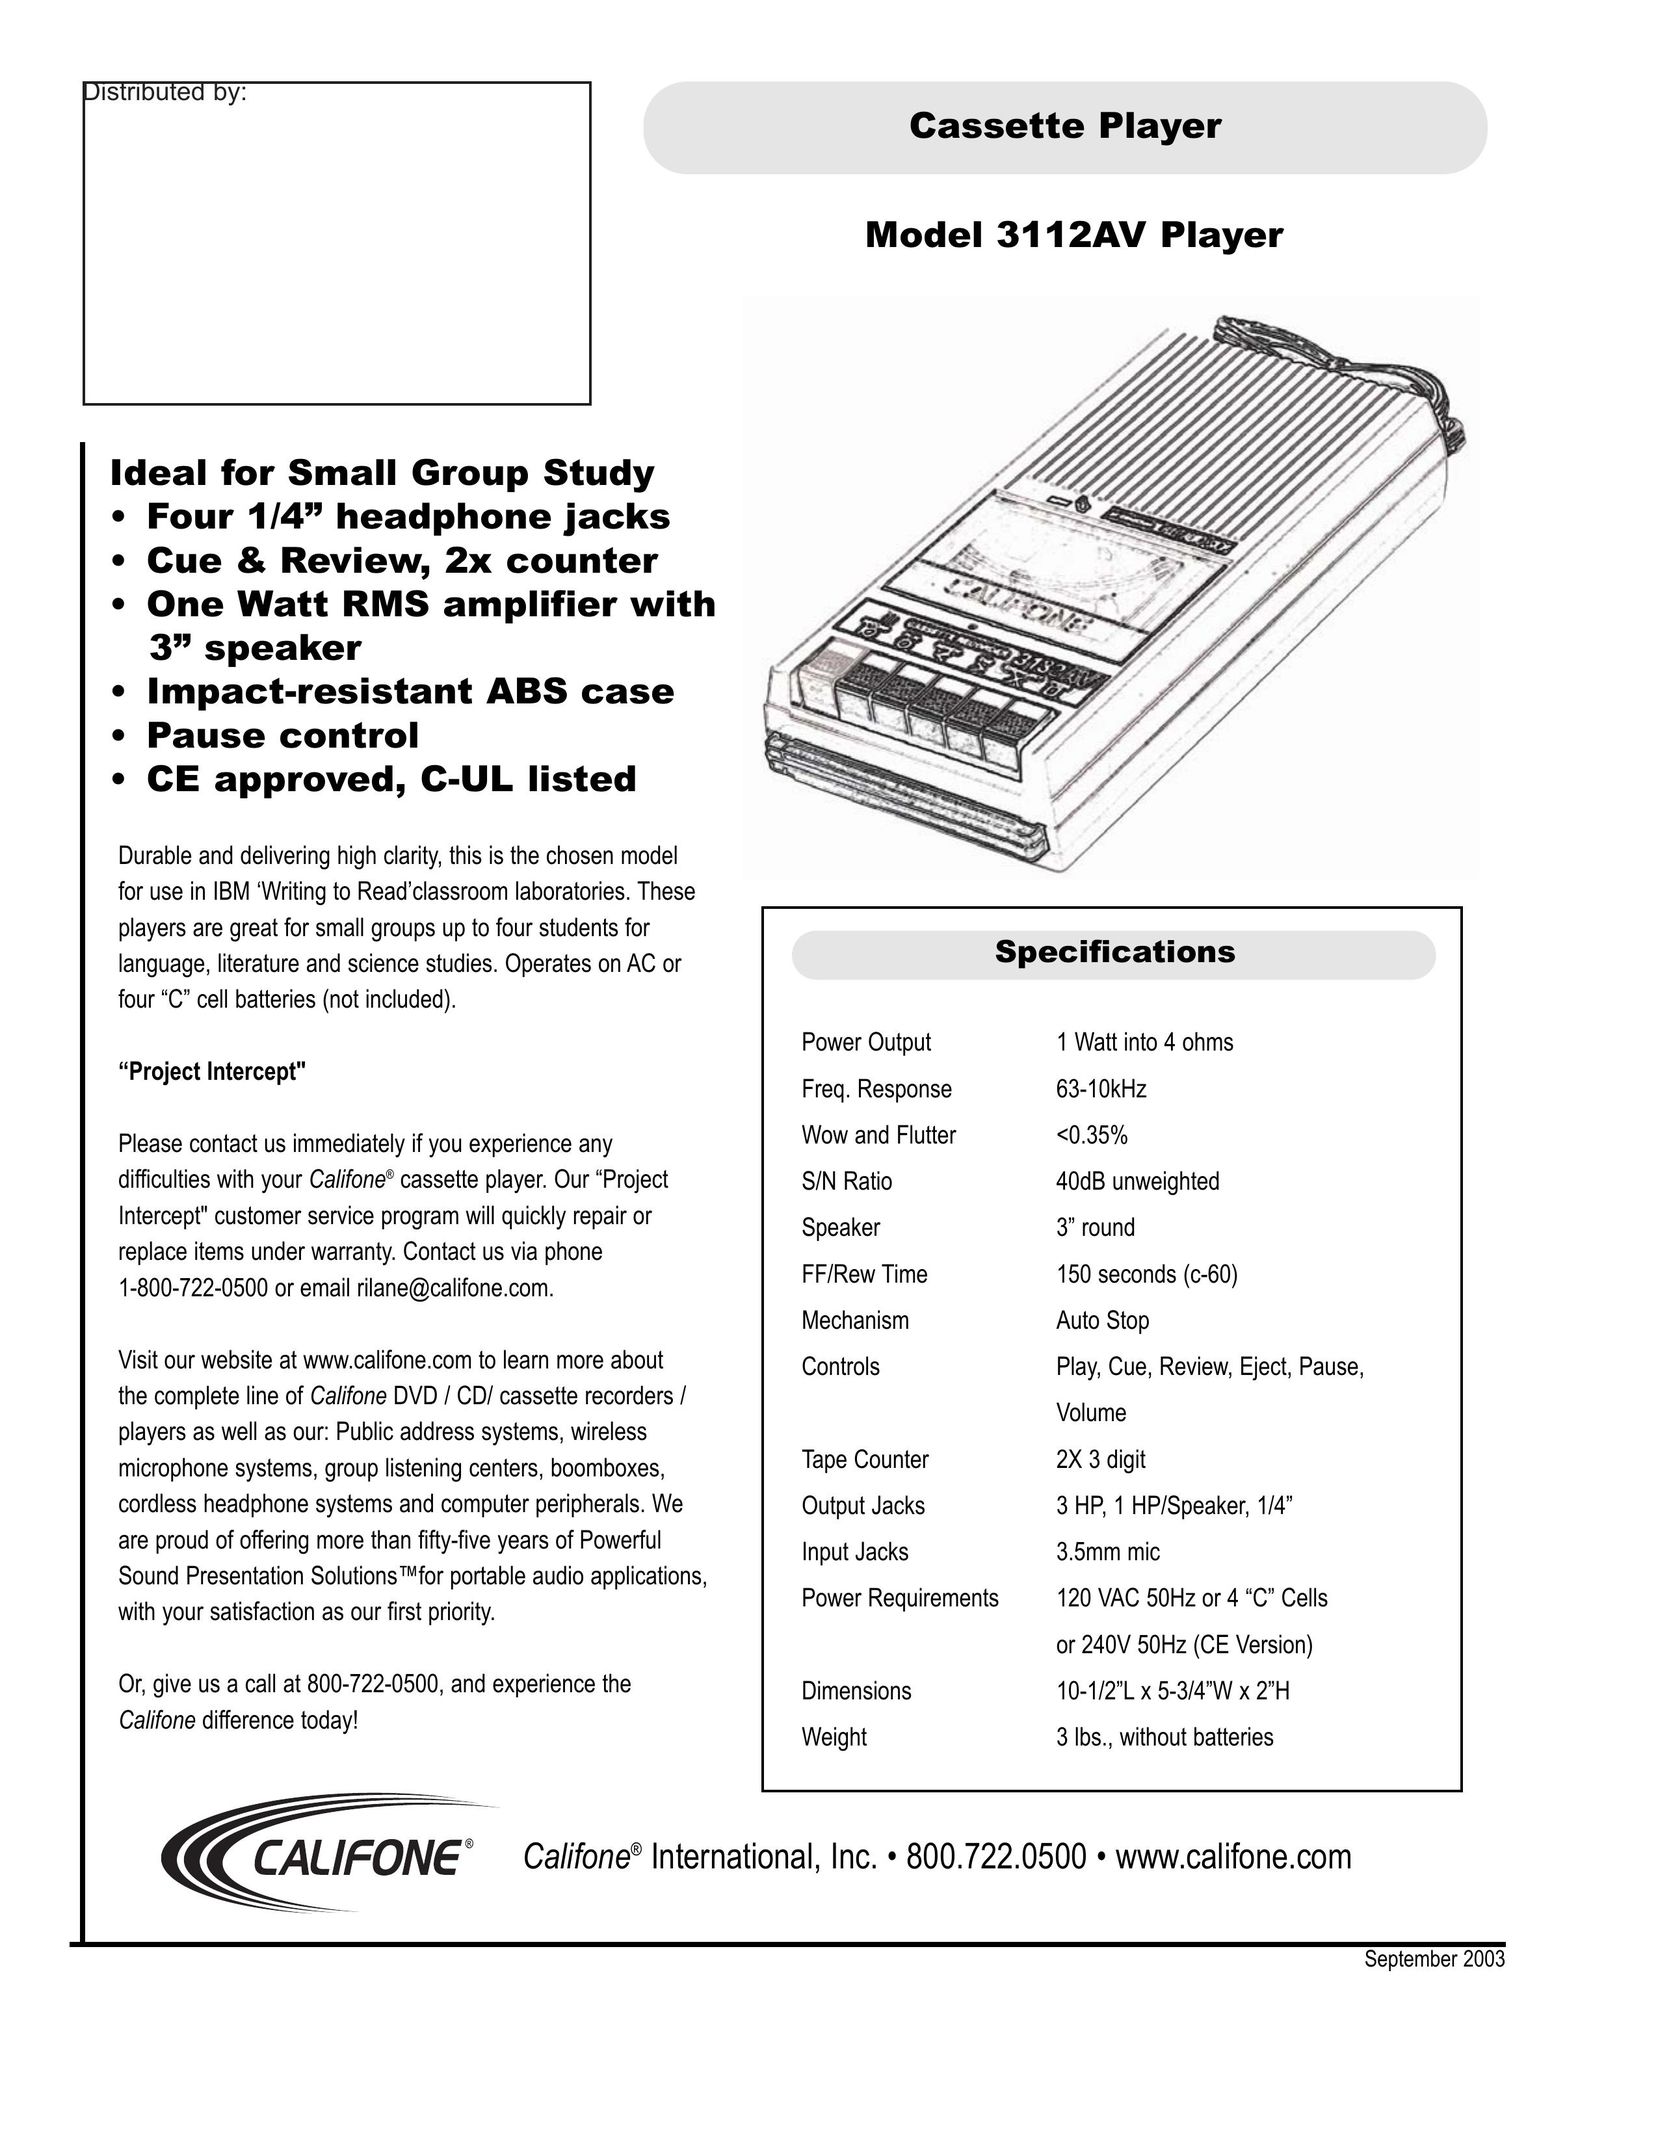 Califone 3112AV MP3 Player User Manual